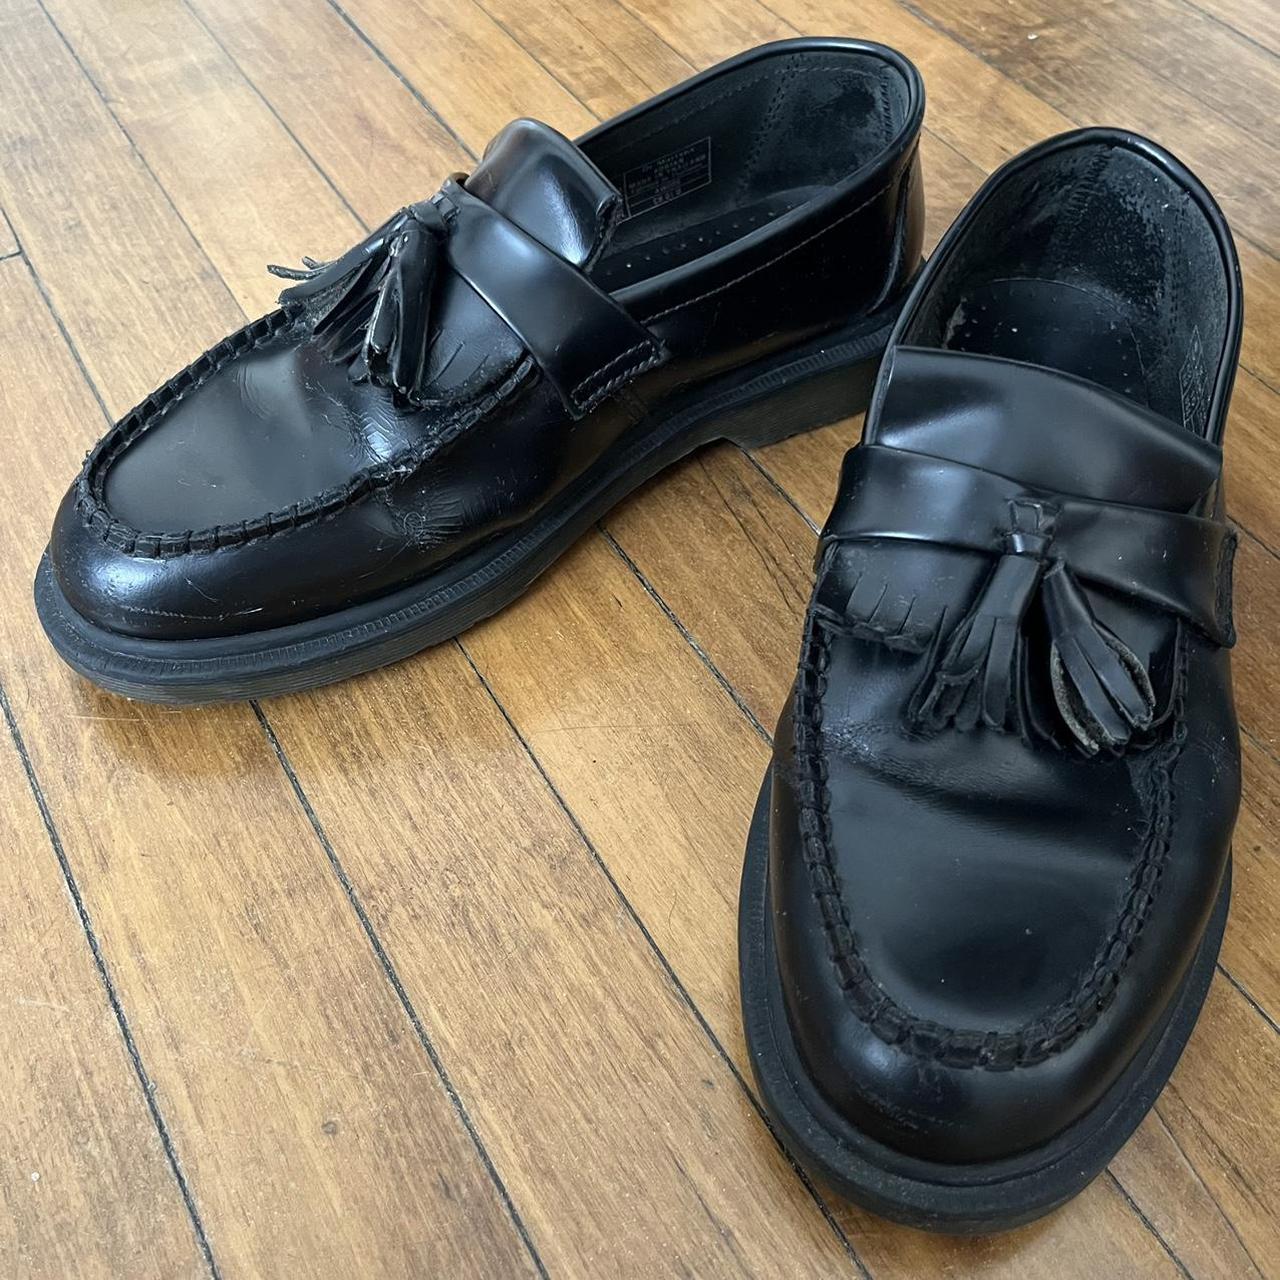 Dr Marten Men’s loafers. Size 9 but runs big, better... - Depop